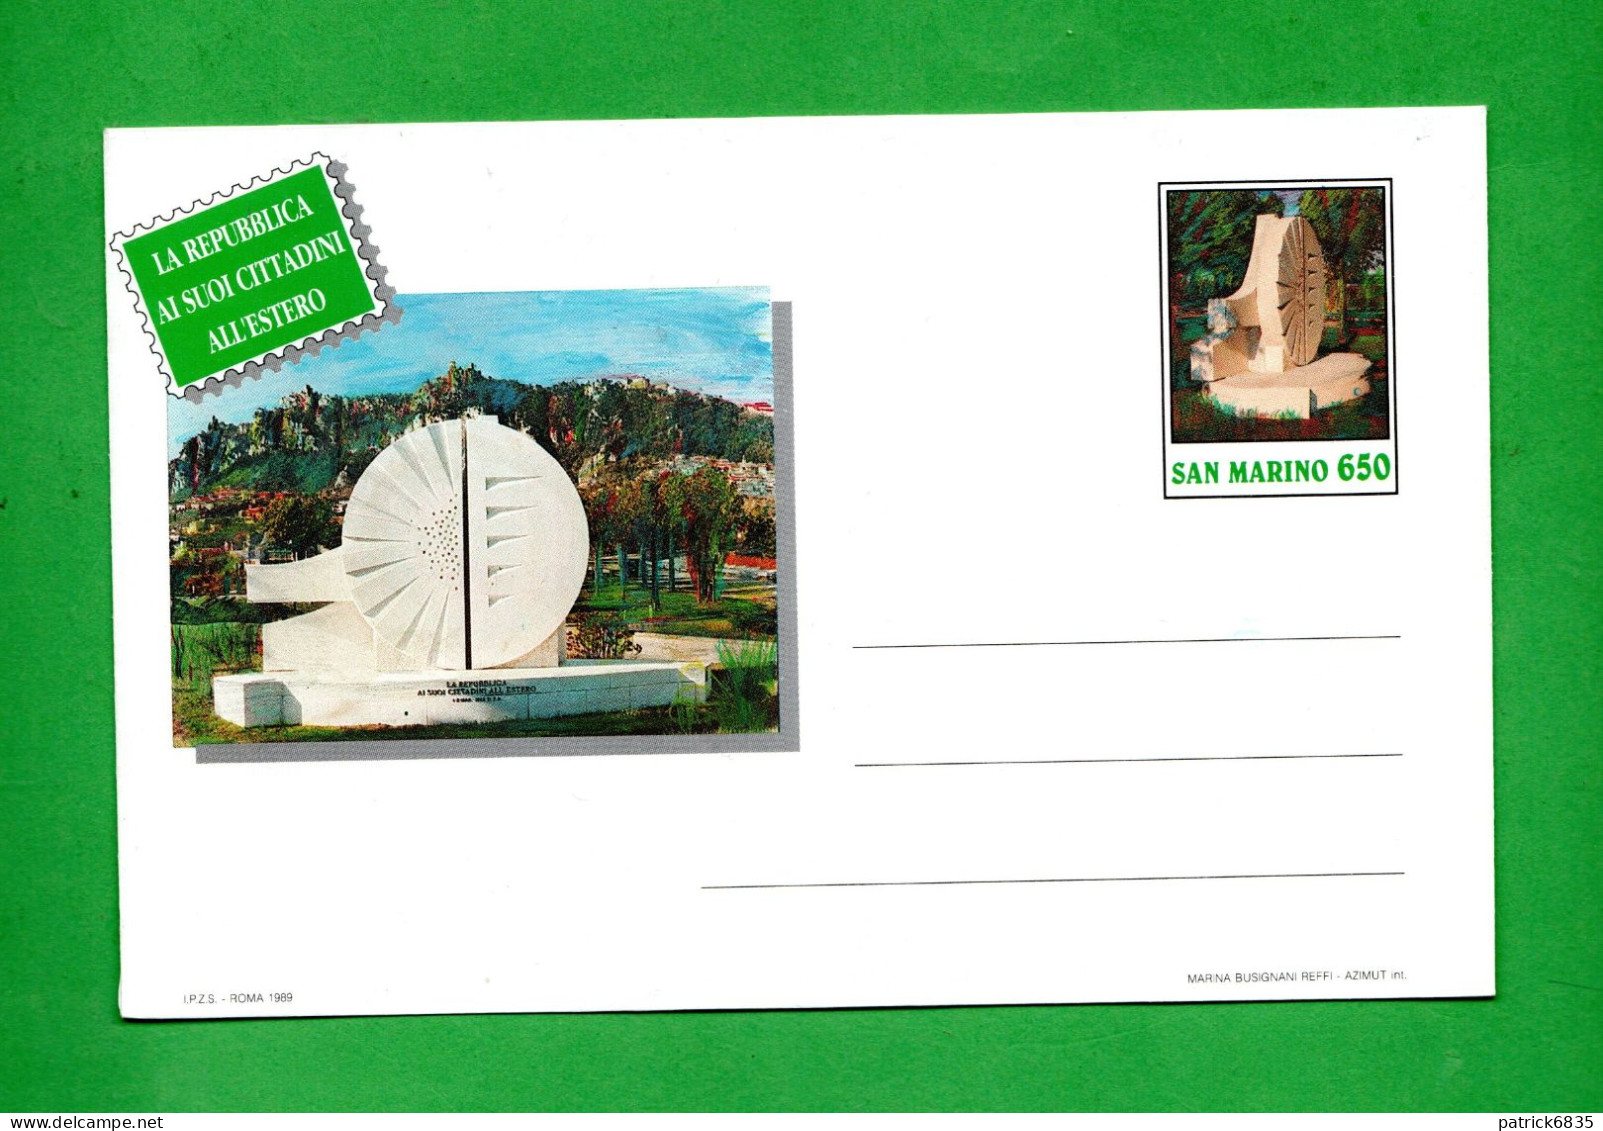 San. MARino - 1989 - Busta Postale, La Repubblica Ai Suoi Cittadini All'Estero,  £ 650. - Postal Stationery